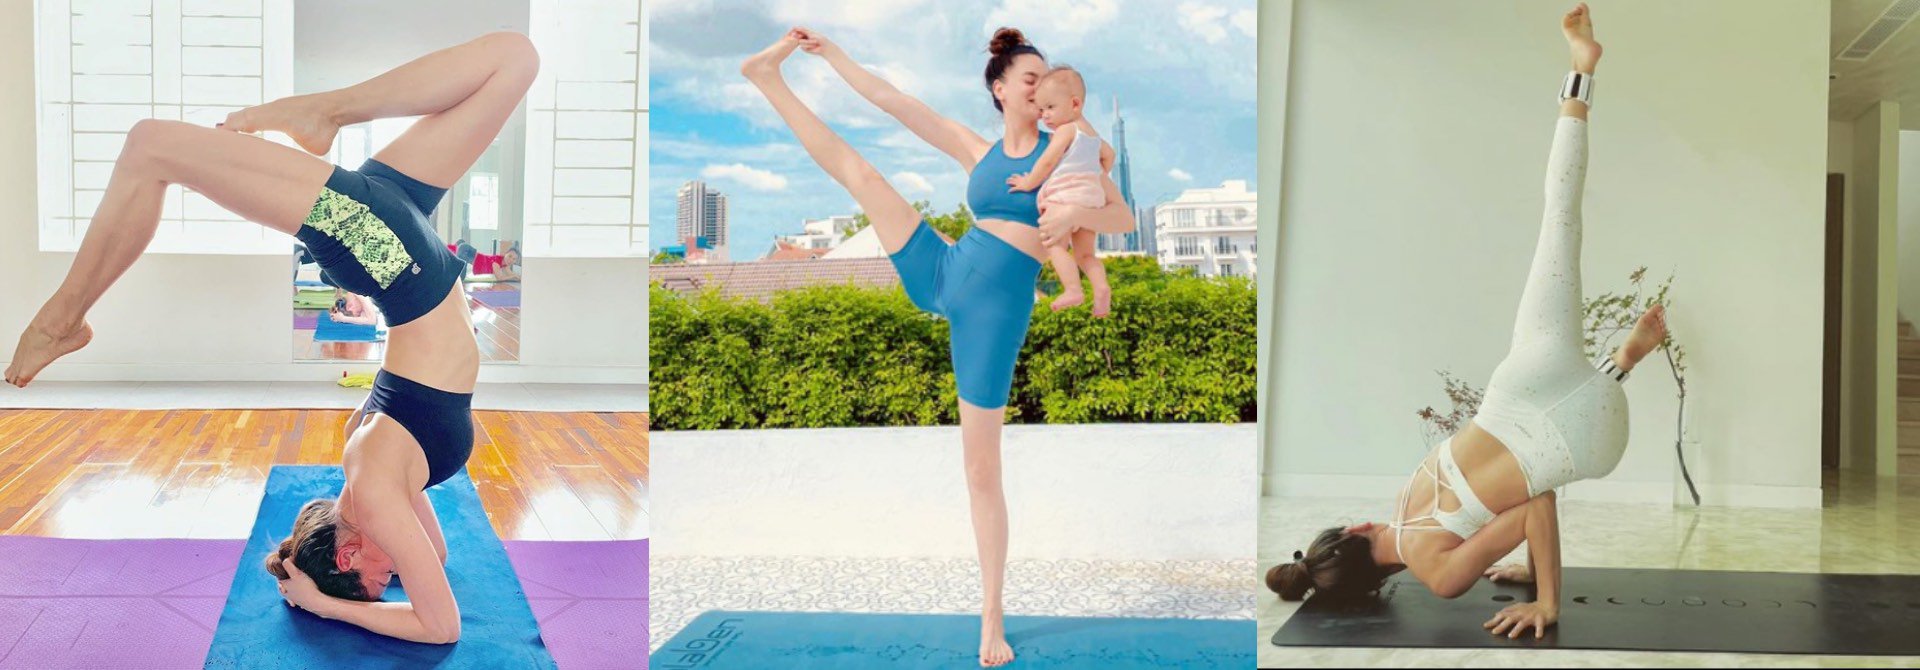 Phương Trinh Jolie tập yoga như diễn xiếc - Ảnh 1.